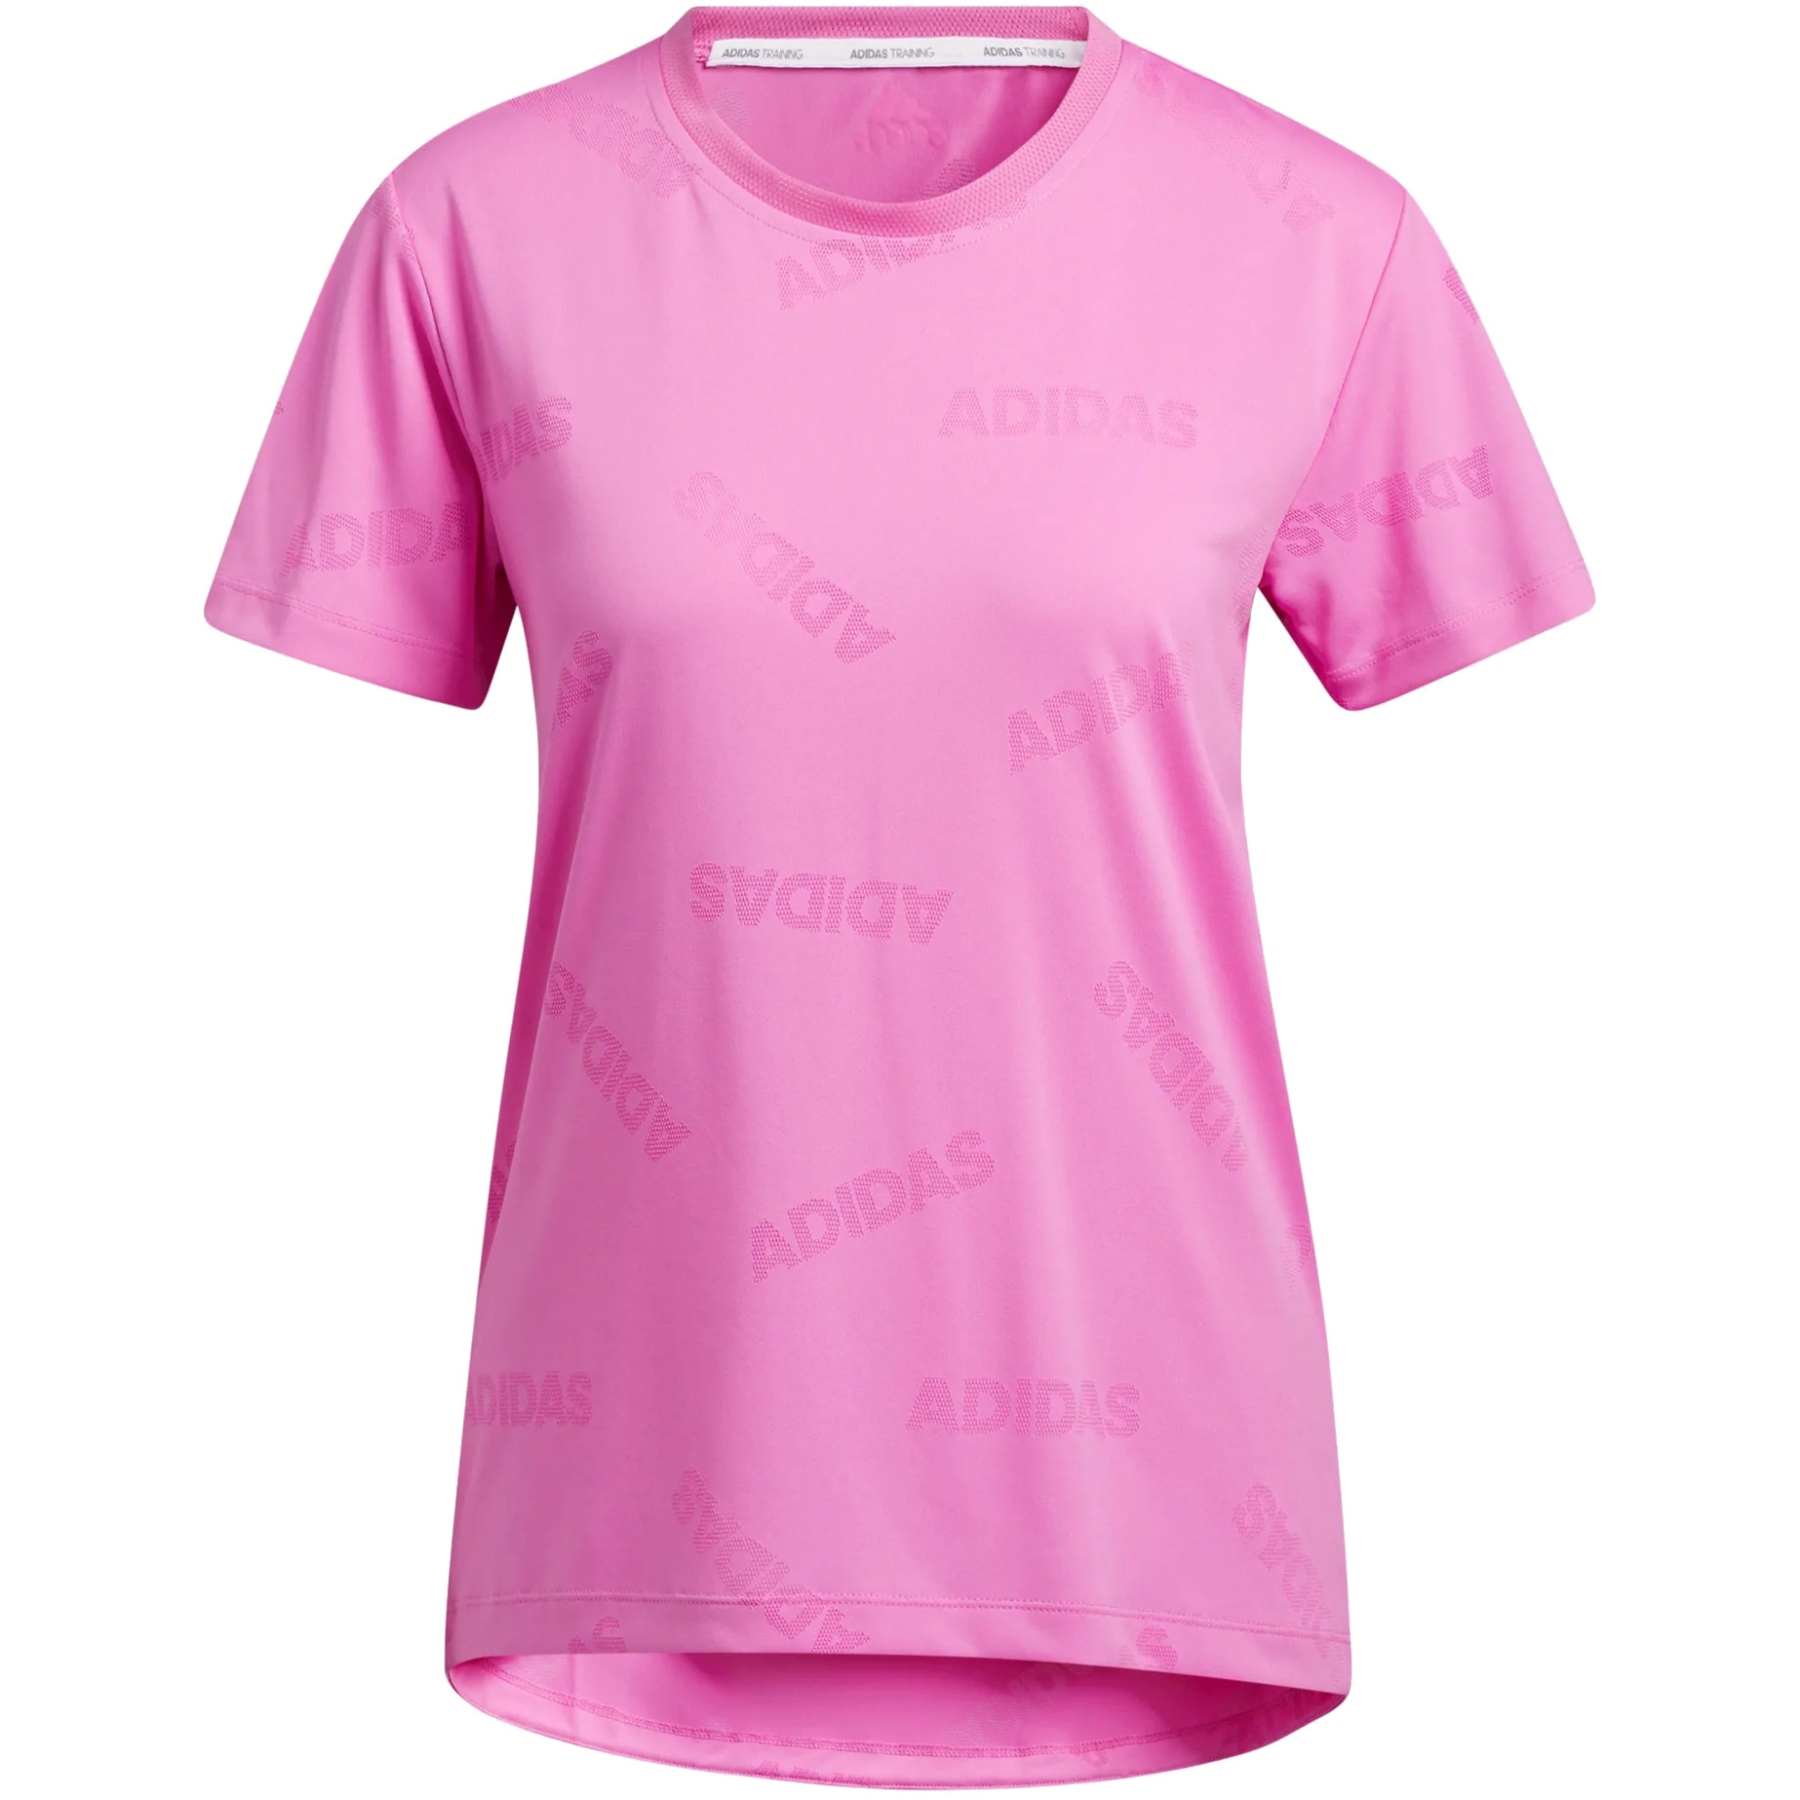 Image of adidas Women's Aeroknit Tee Shirt - screaming pink/wild pink GQ9429